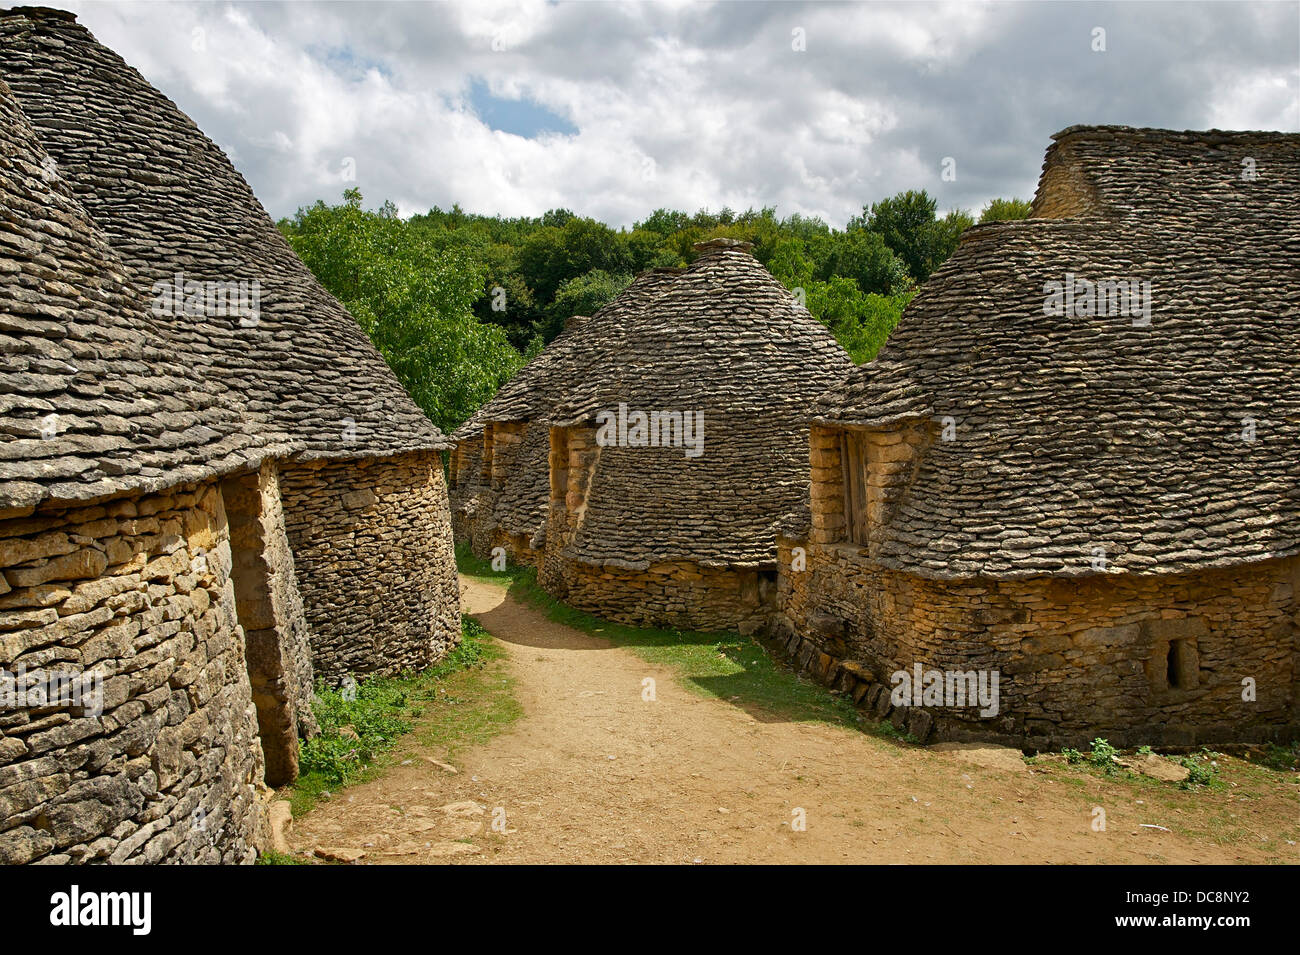 The Cabanes du Breuil, in Saint-André d'Allas, Dordogne, France. Stock Photo